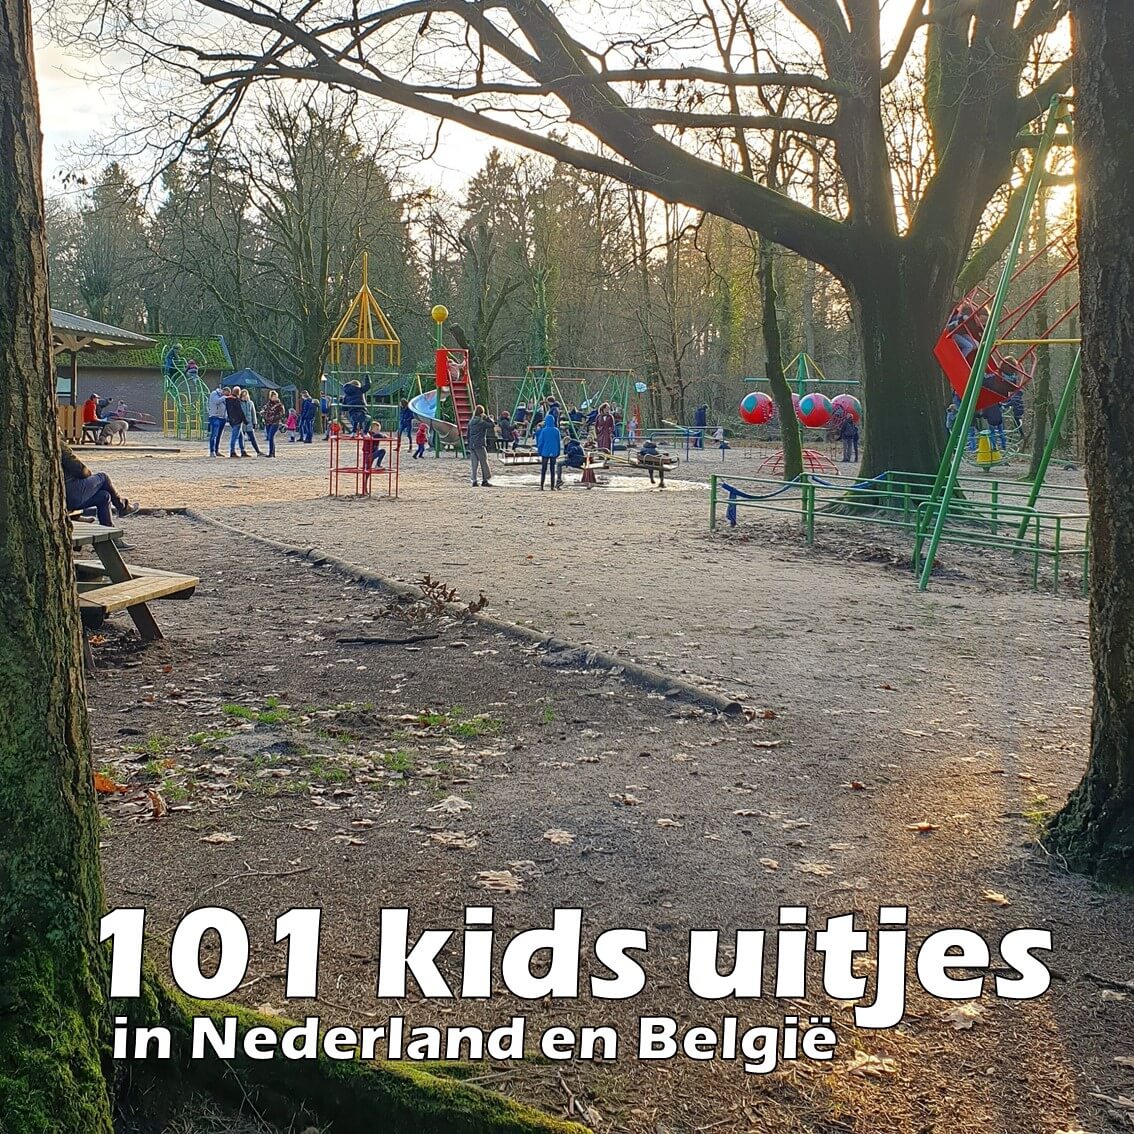 101 leuke uitjes met kinderen in Nederland en België. Wat kun je toch veel leuke uitjes met kinderen doen in Nederland en België! Ik maakte een lijstje van onze favorieten, in alle provincies. Er zitten zowel binnen als buiten uitjes tussen.